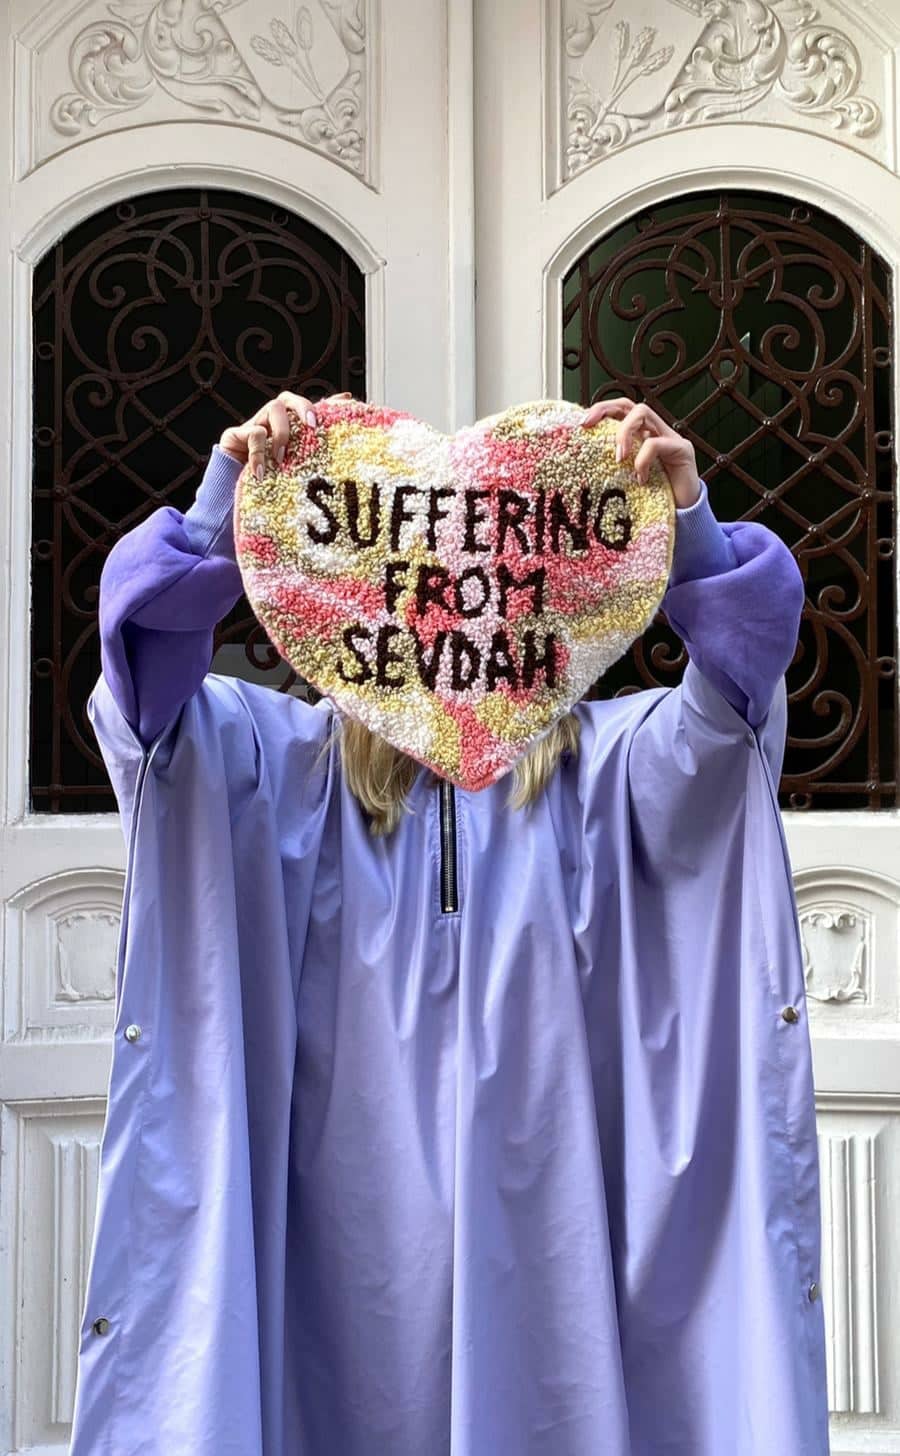 Handmade Tapestry "SUFFERING FROM SEVDAH" by Kasja Jerlagic for Bazerdzan